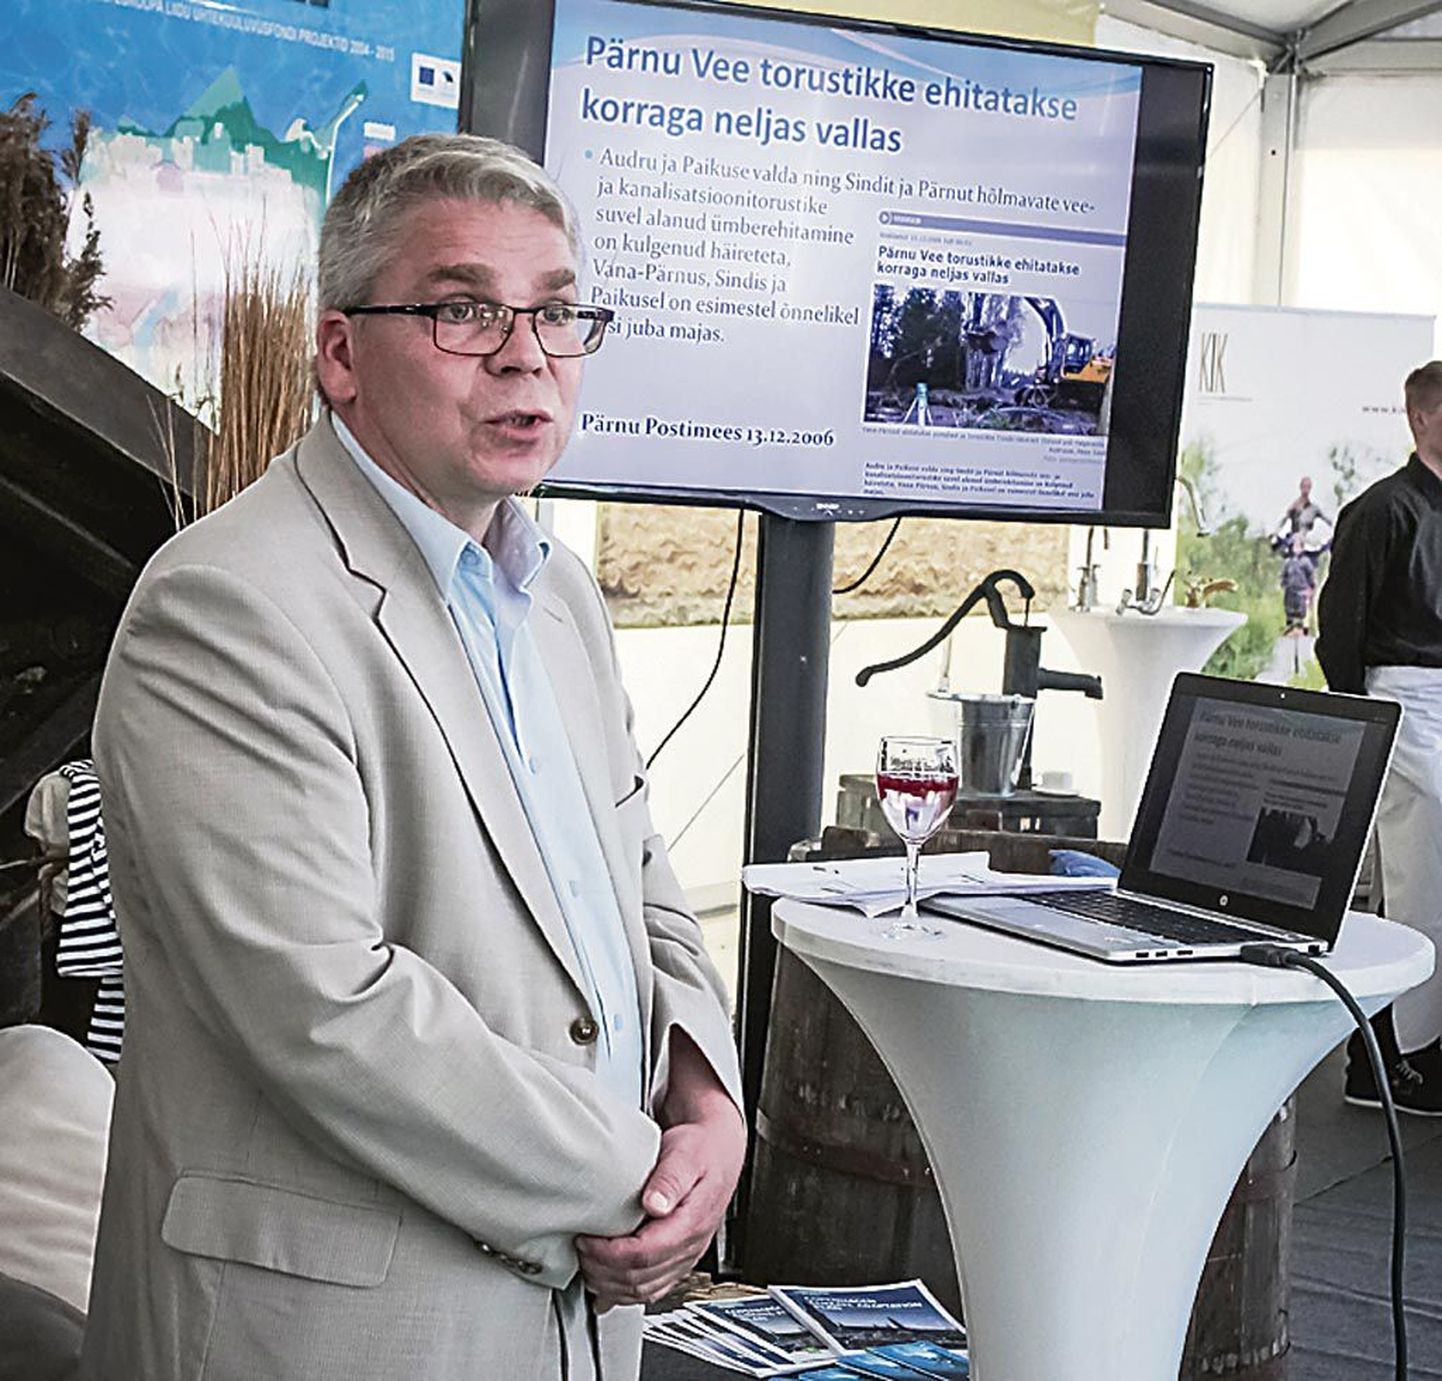 Pärnu Vee juhataja Leho Võrk andis ülevaate firma tegevusest uute torustike rajamisel viimase kümne aasta jooksul.